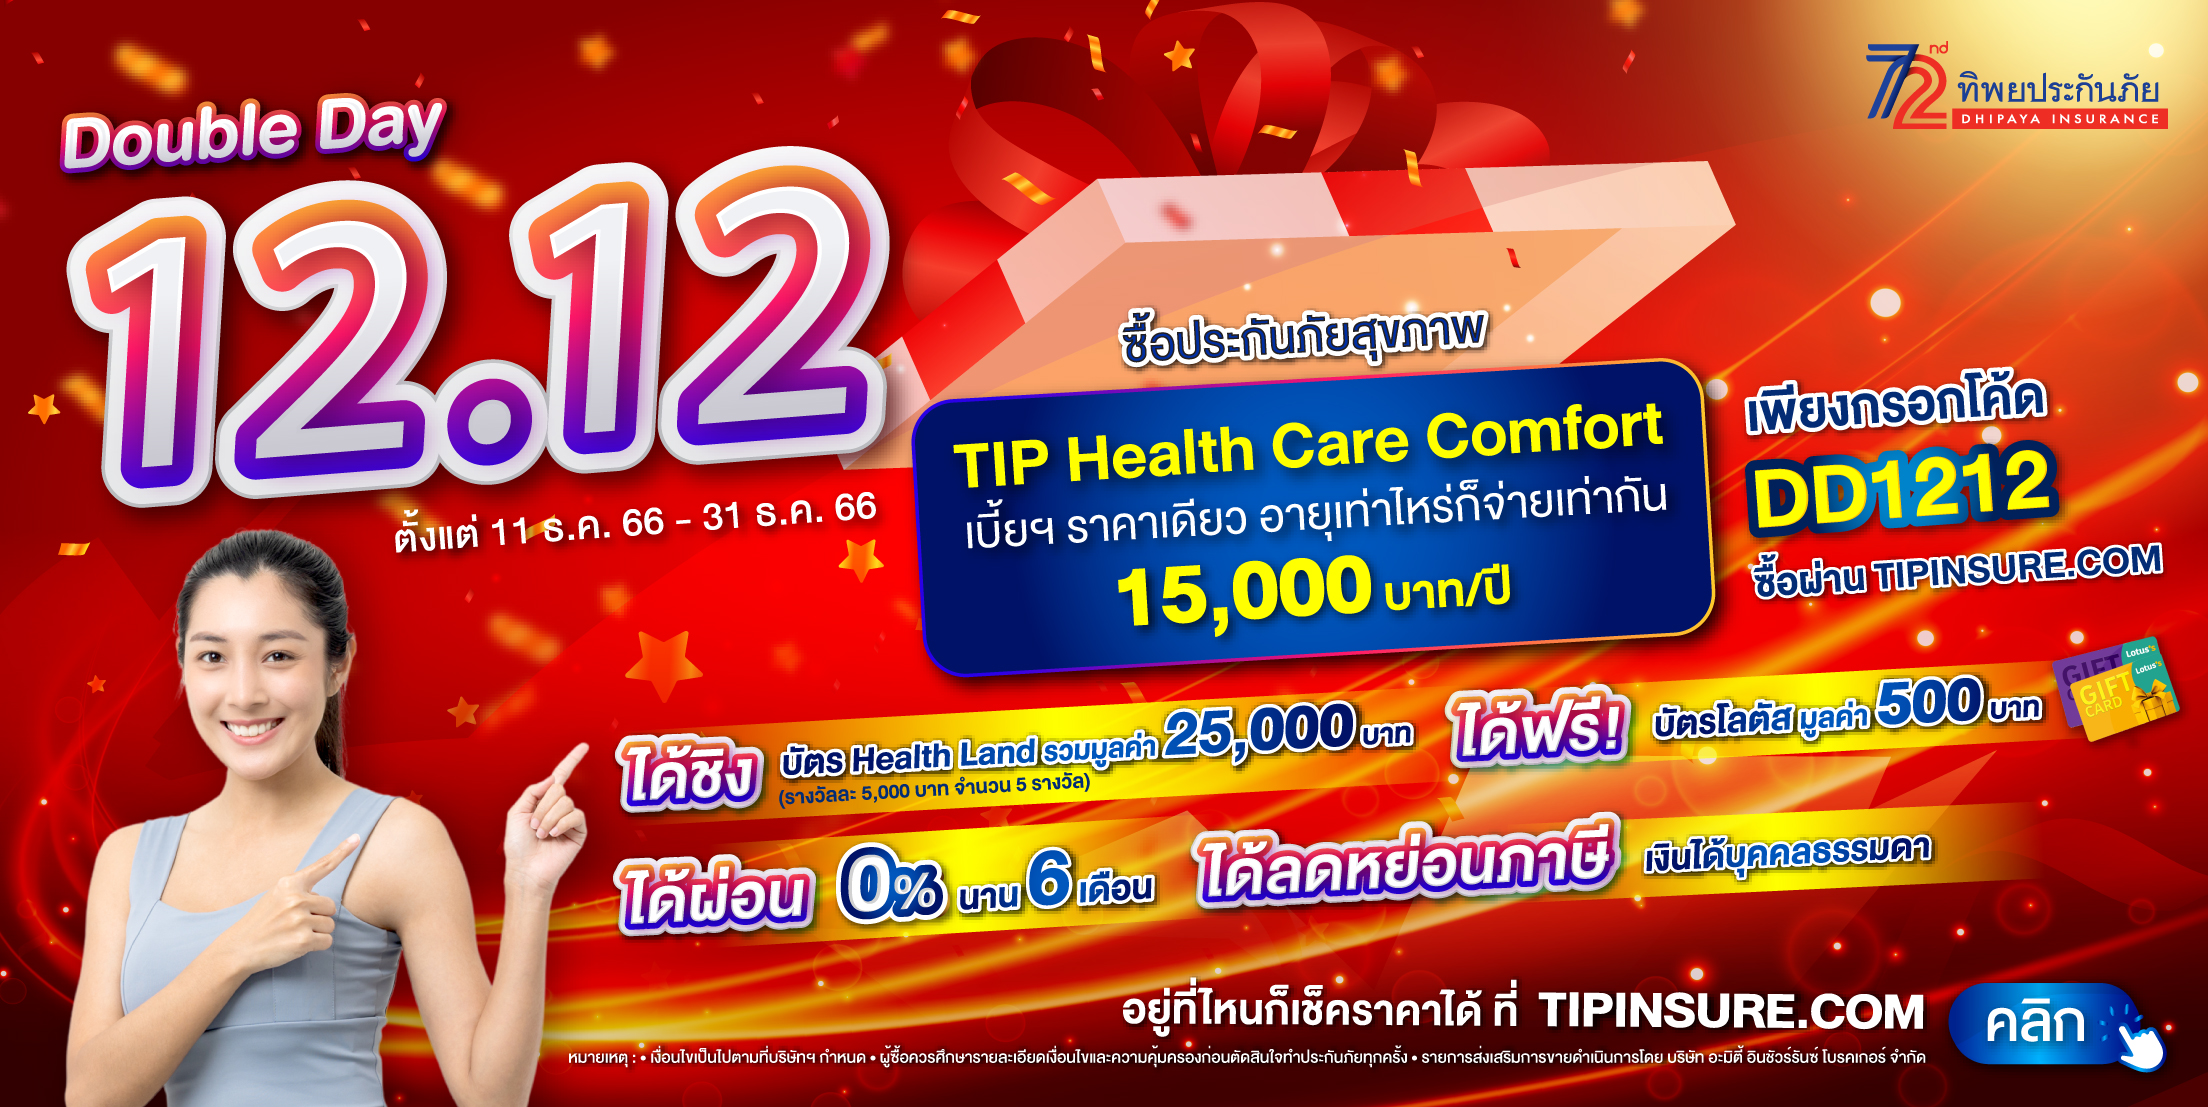 ซื้อประกันสุขภาพ TIP Health Care Comfort รับบัตรโลตัส 500 บาท และชิงรางวัลมูลค่ากว่า 25,000 บาท